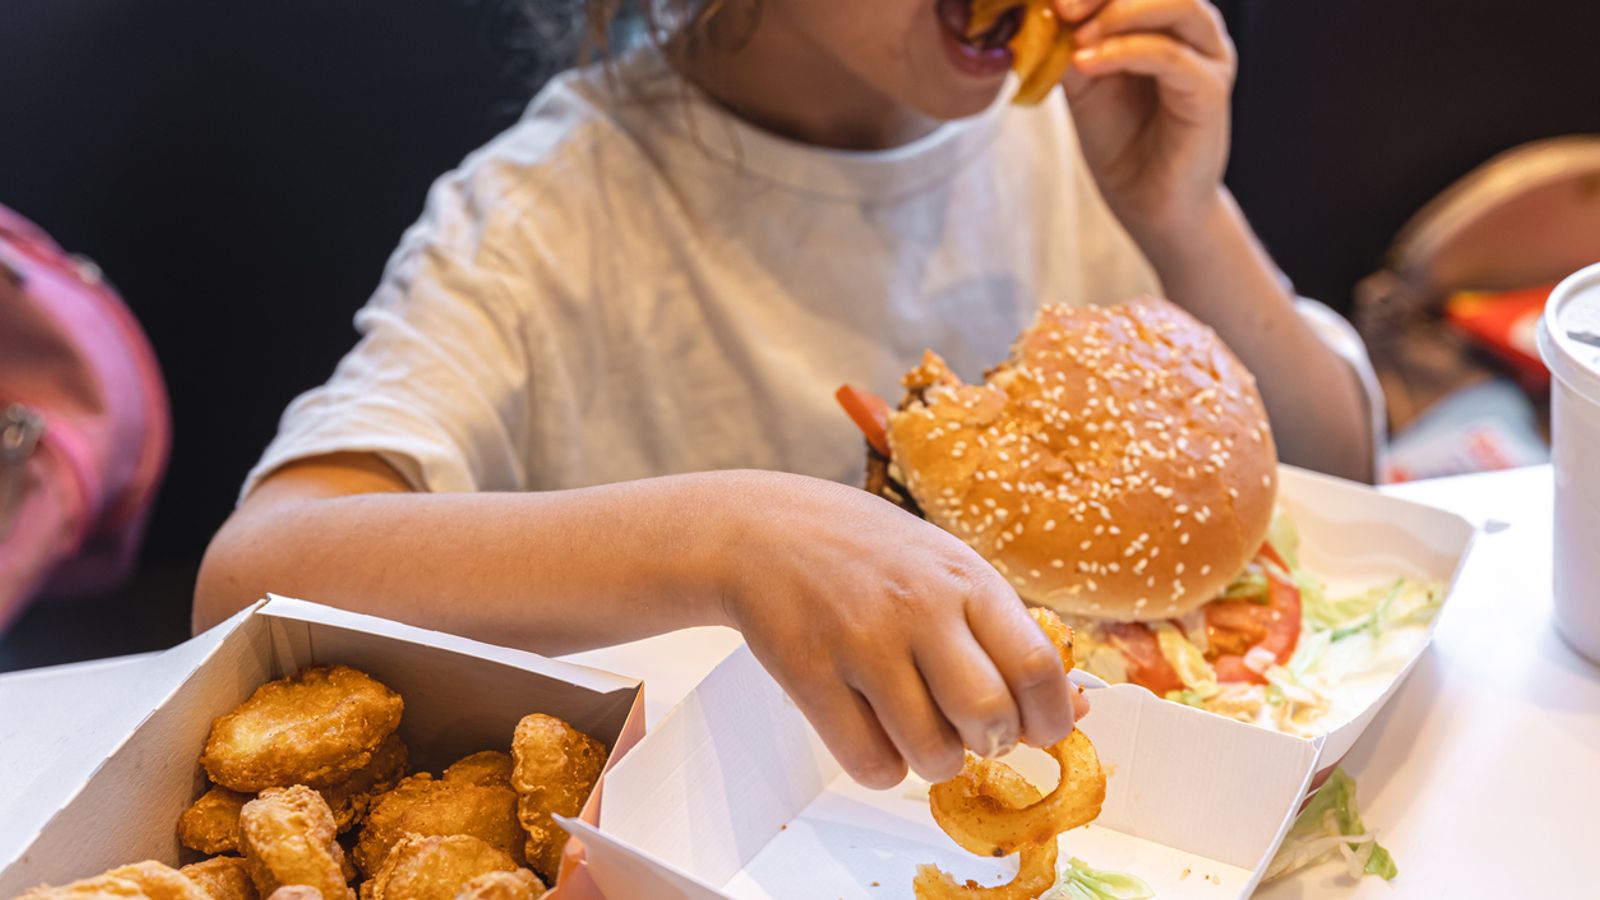 Децата в Обединеното кралство са по-ниски, по-дебели и по-болни поради лоша диета и бедност, сочи доклад